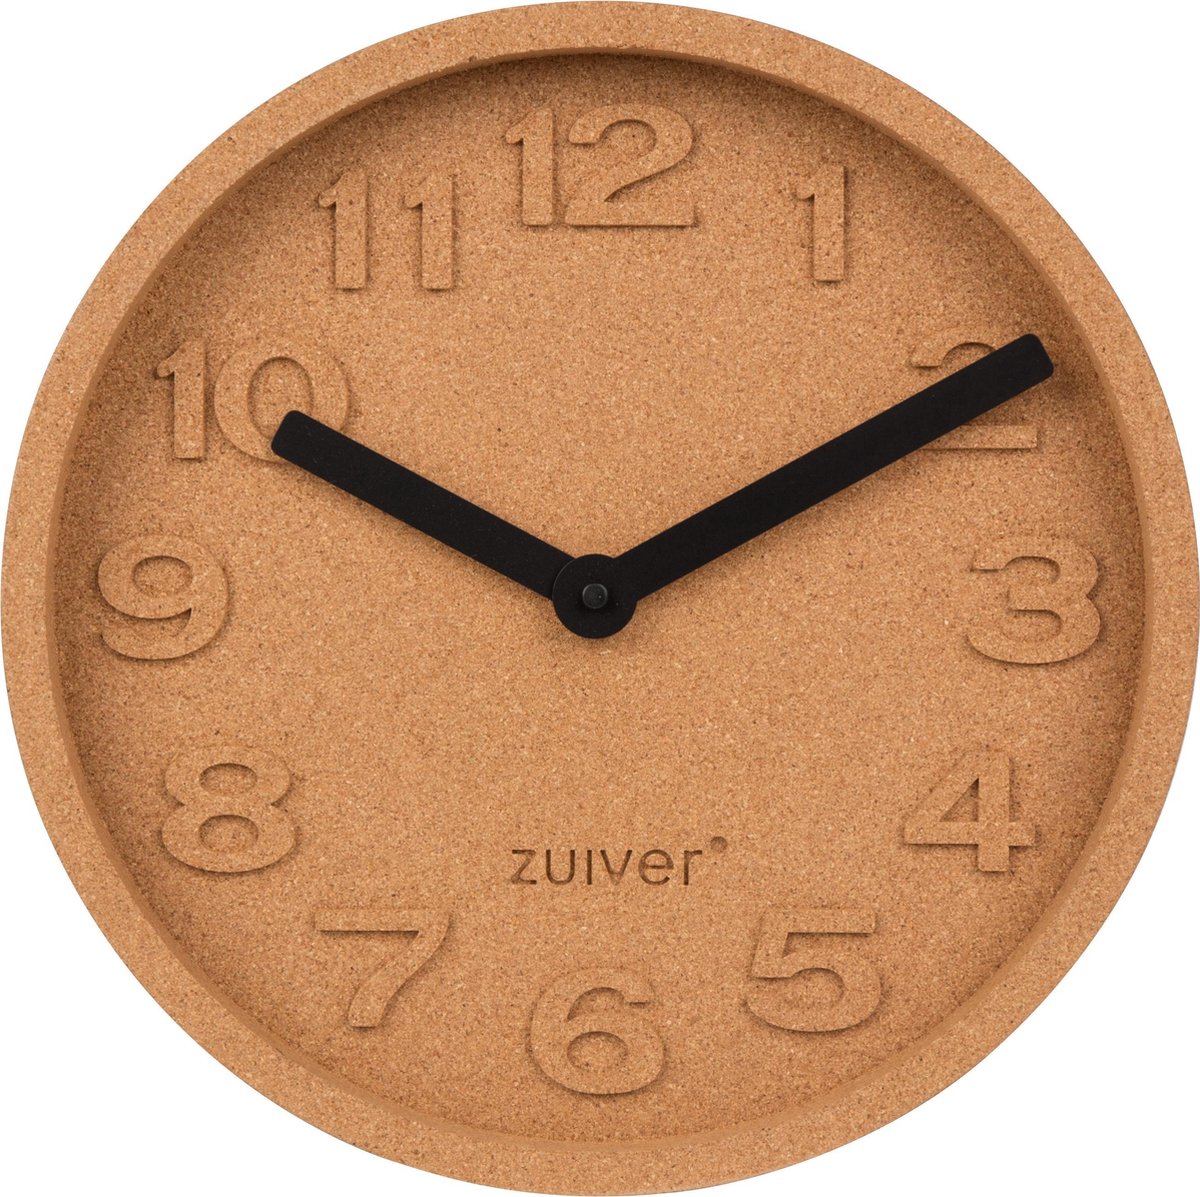 Zuiver Cork Time Wandklok Ø 31 cm - Bruin